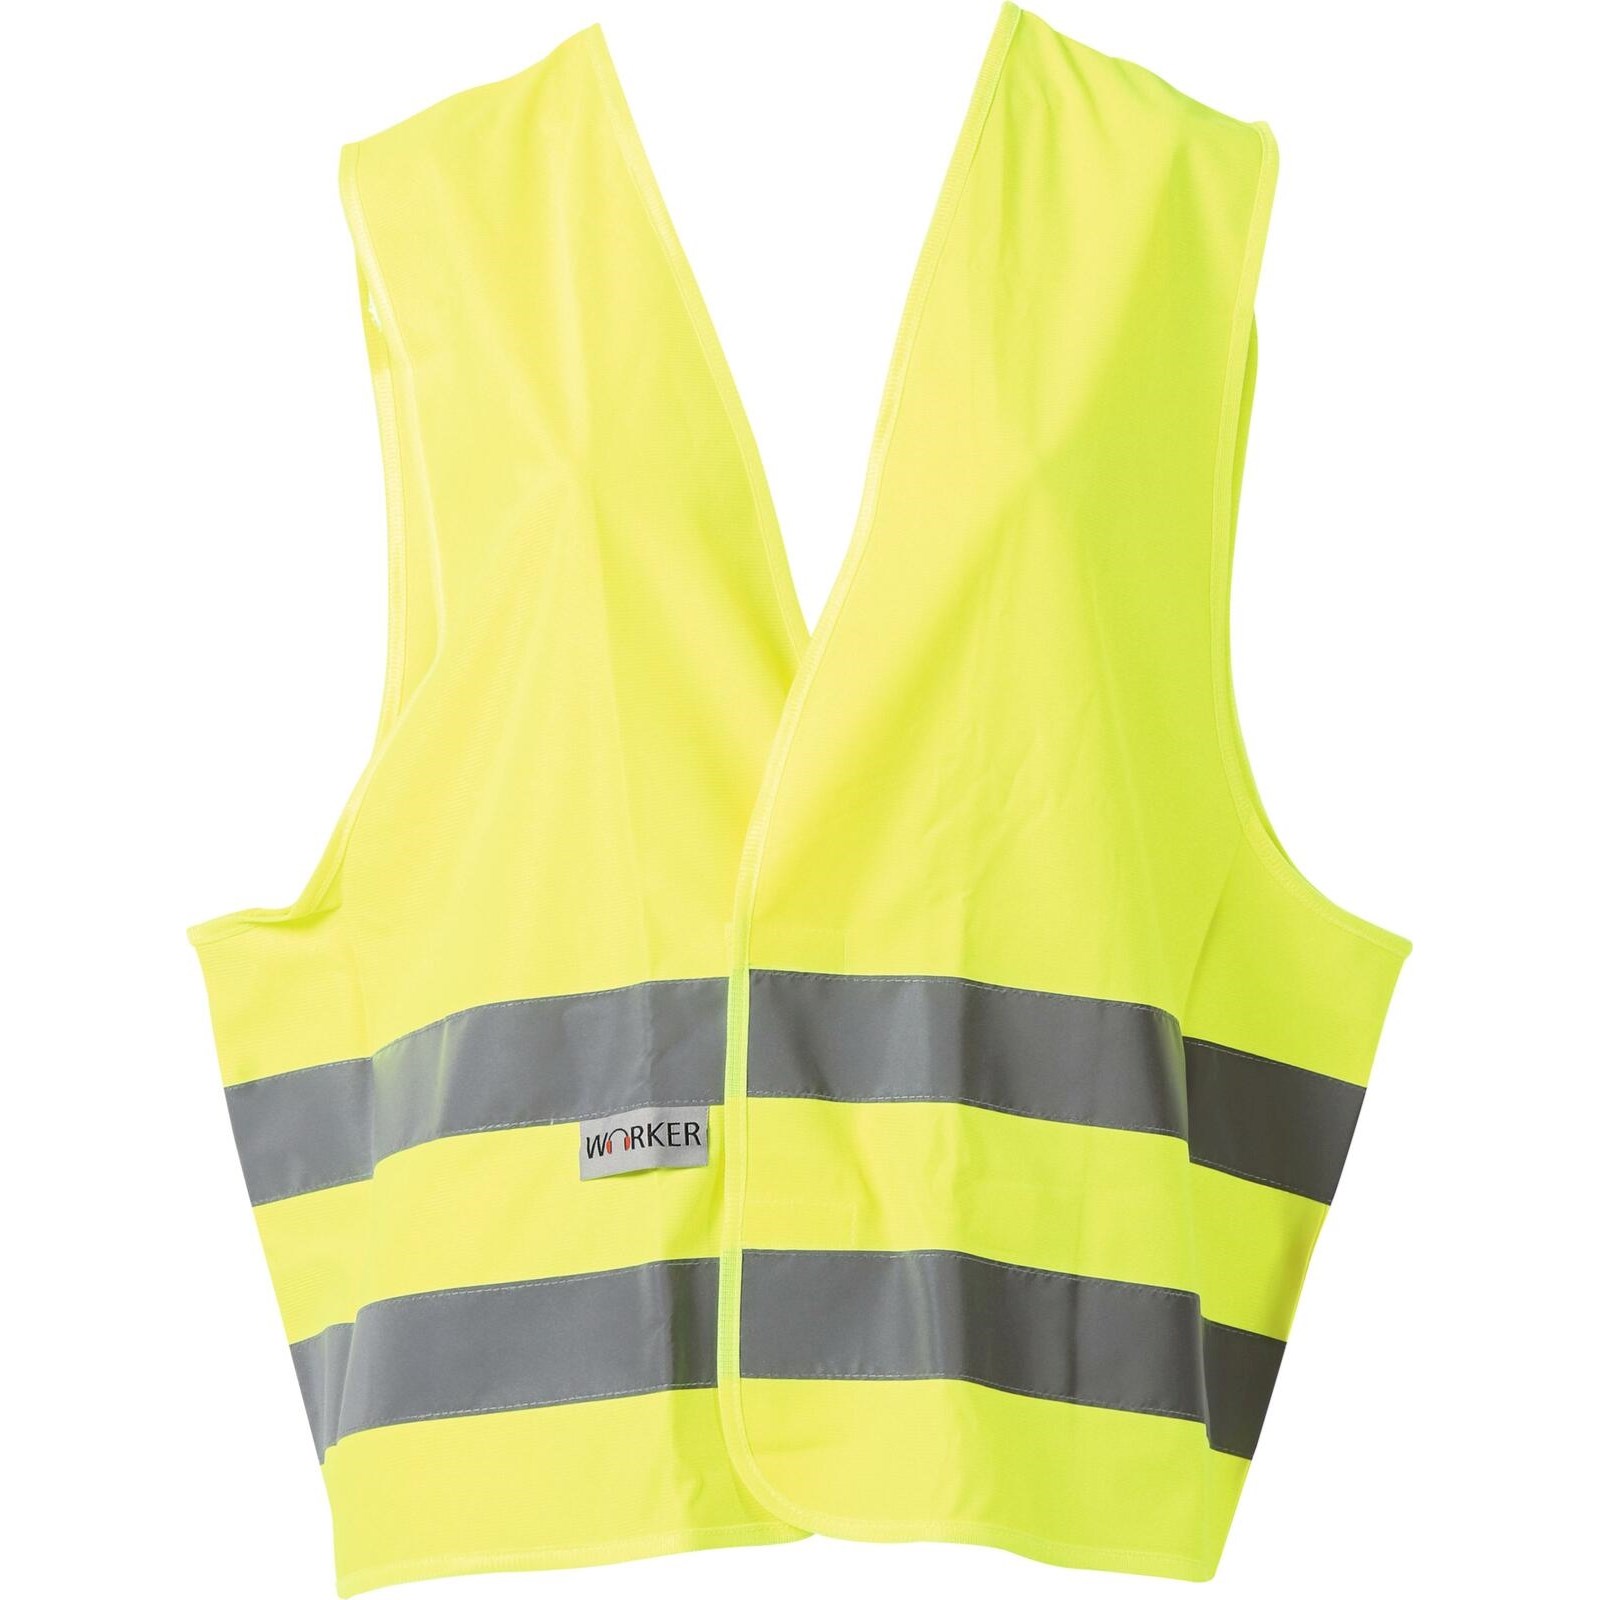 Warnweste gelb kaufen - Sicherheitsjacken - LANDI